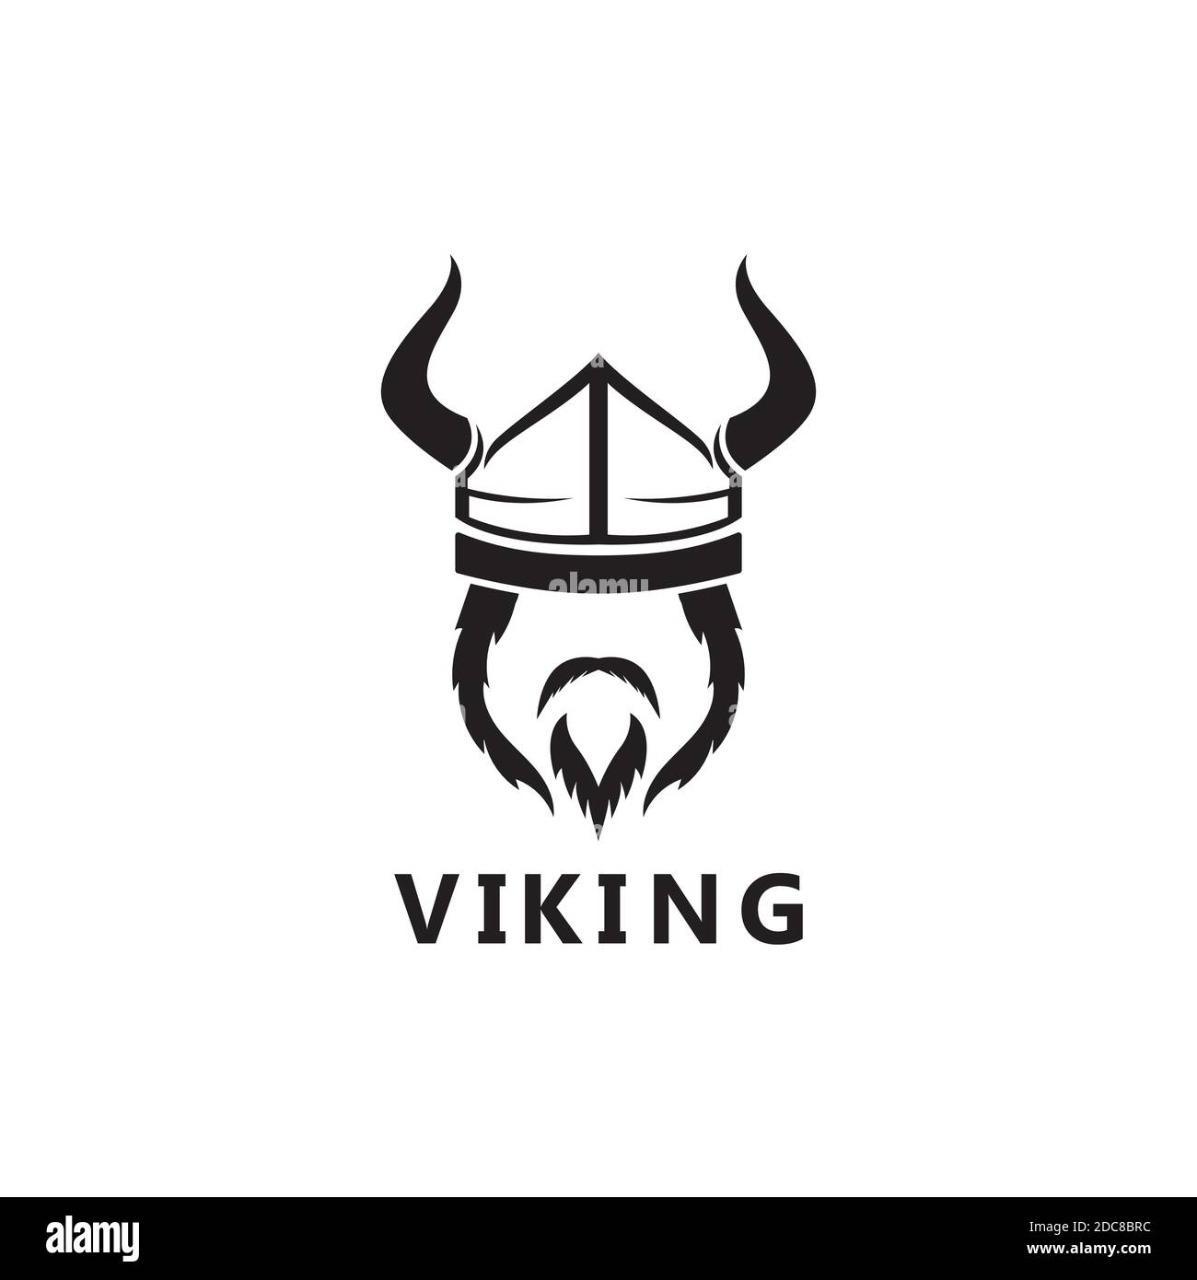 Vikingo95?s=yu3tb1fht1gwwetxcm4tzrqwkxfug7xzbwyugblpzue=